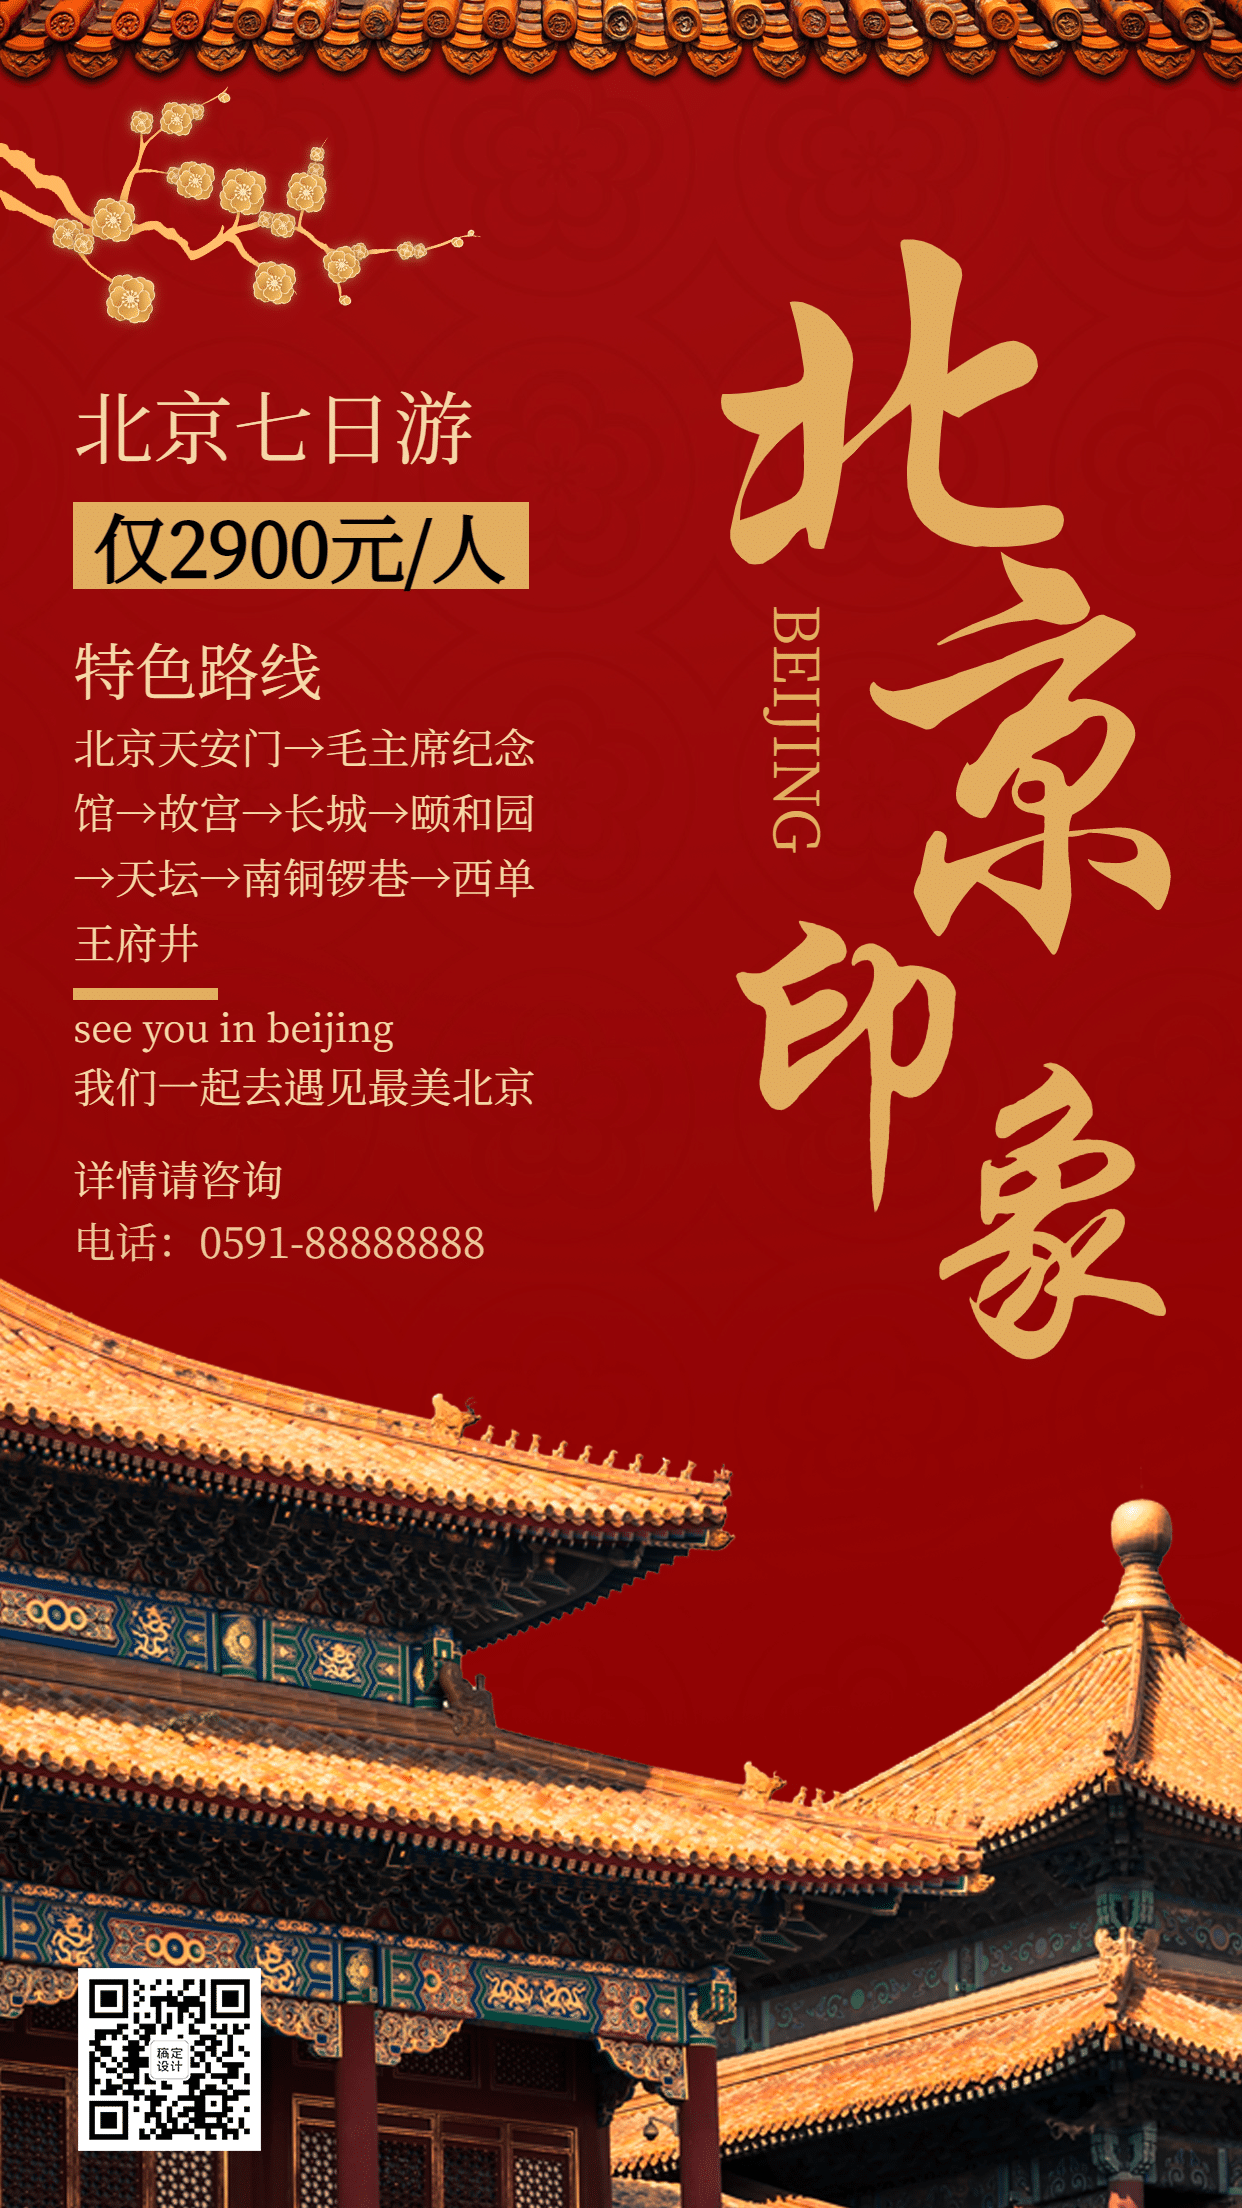 北京复古中国风报团游旅游手机海报